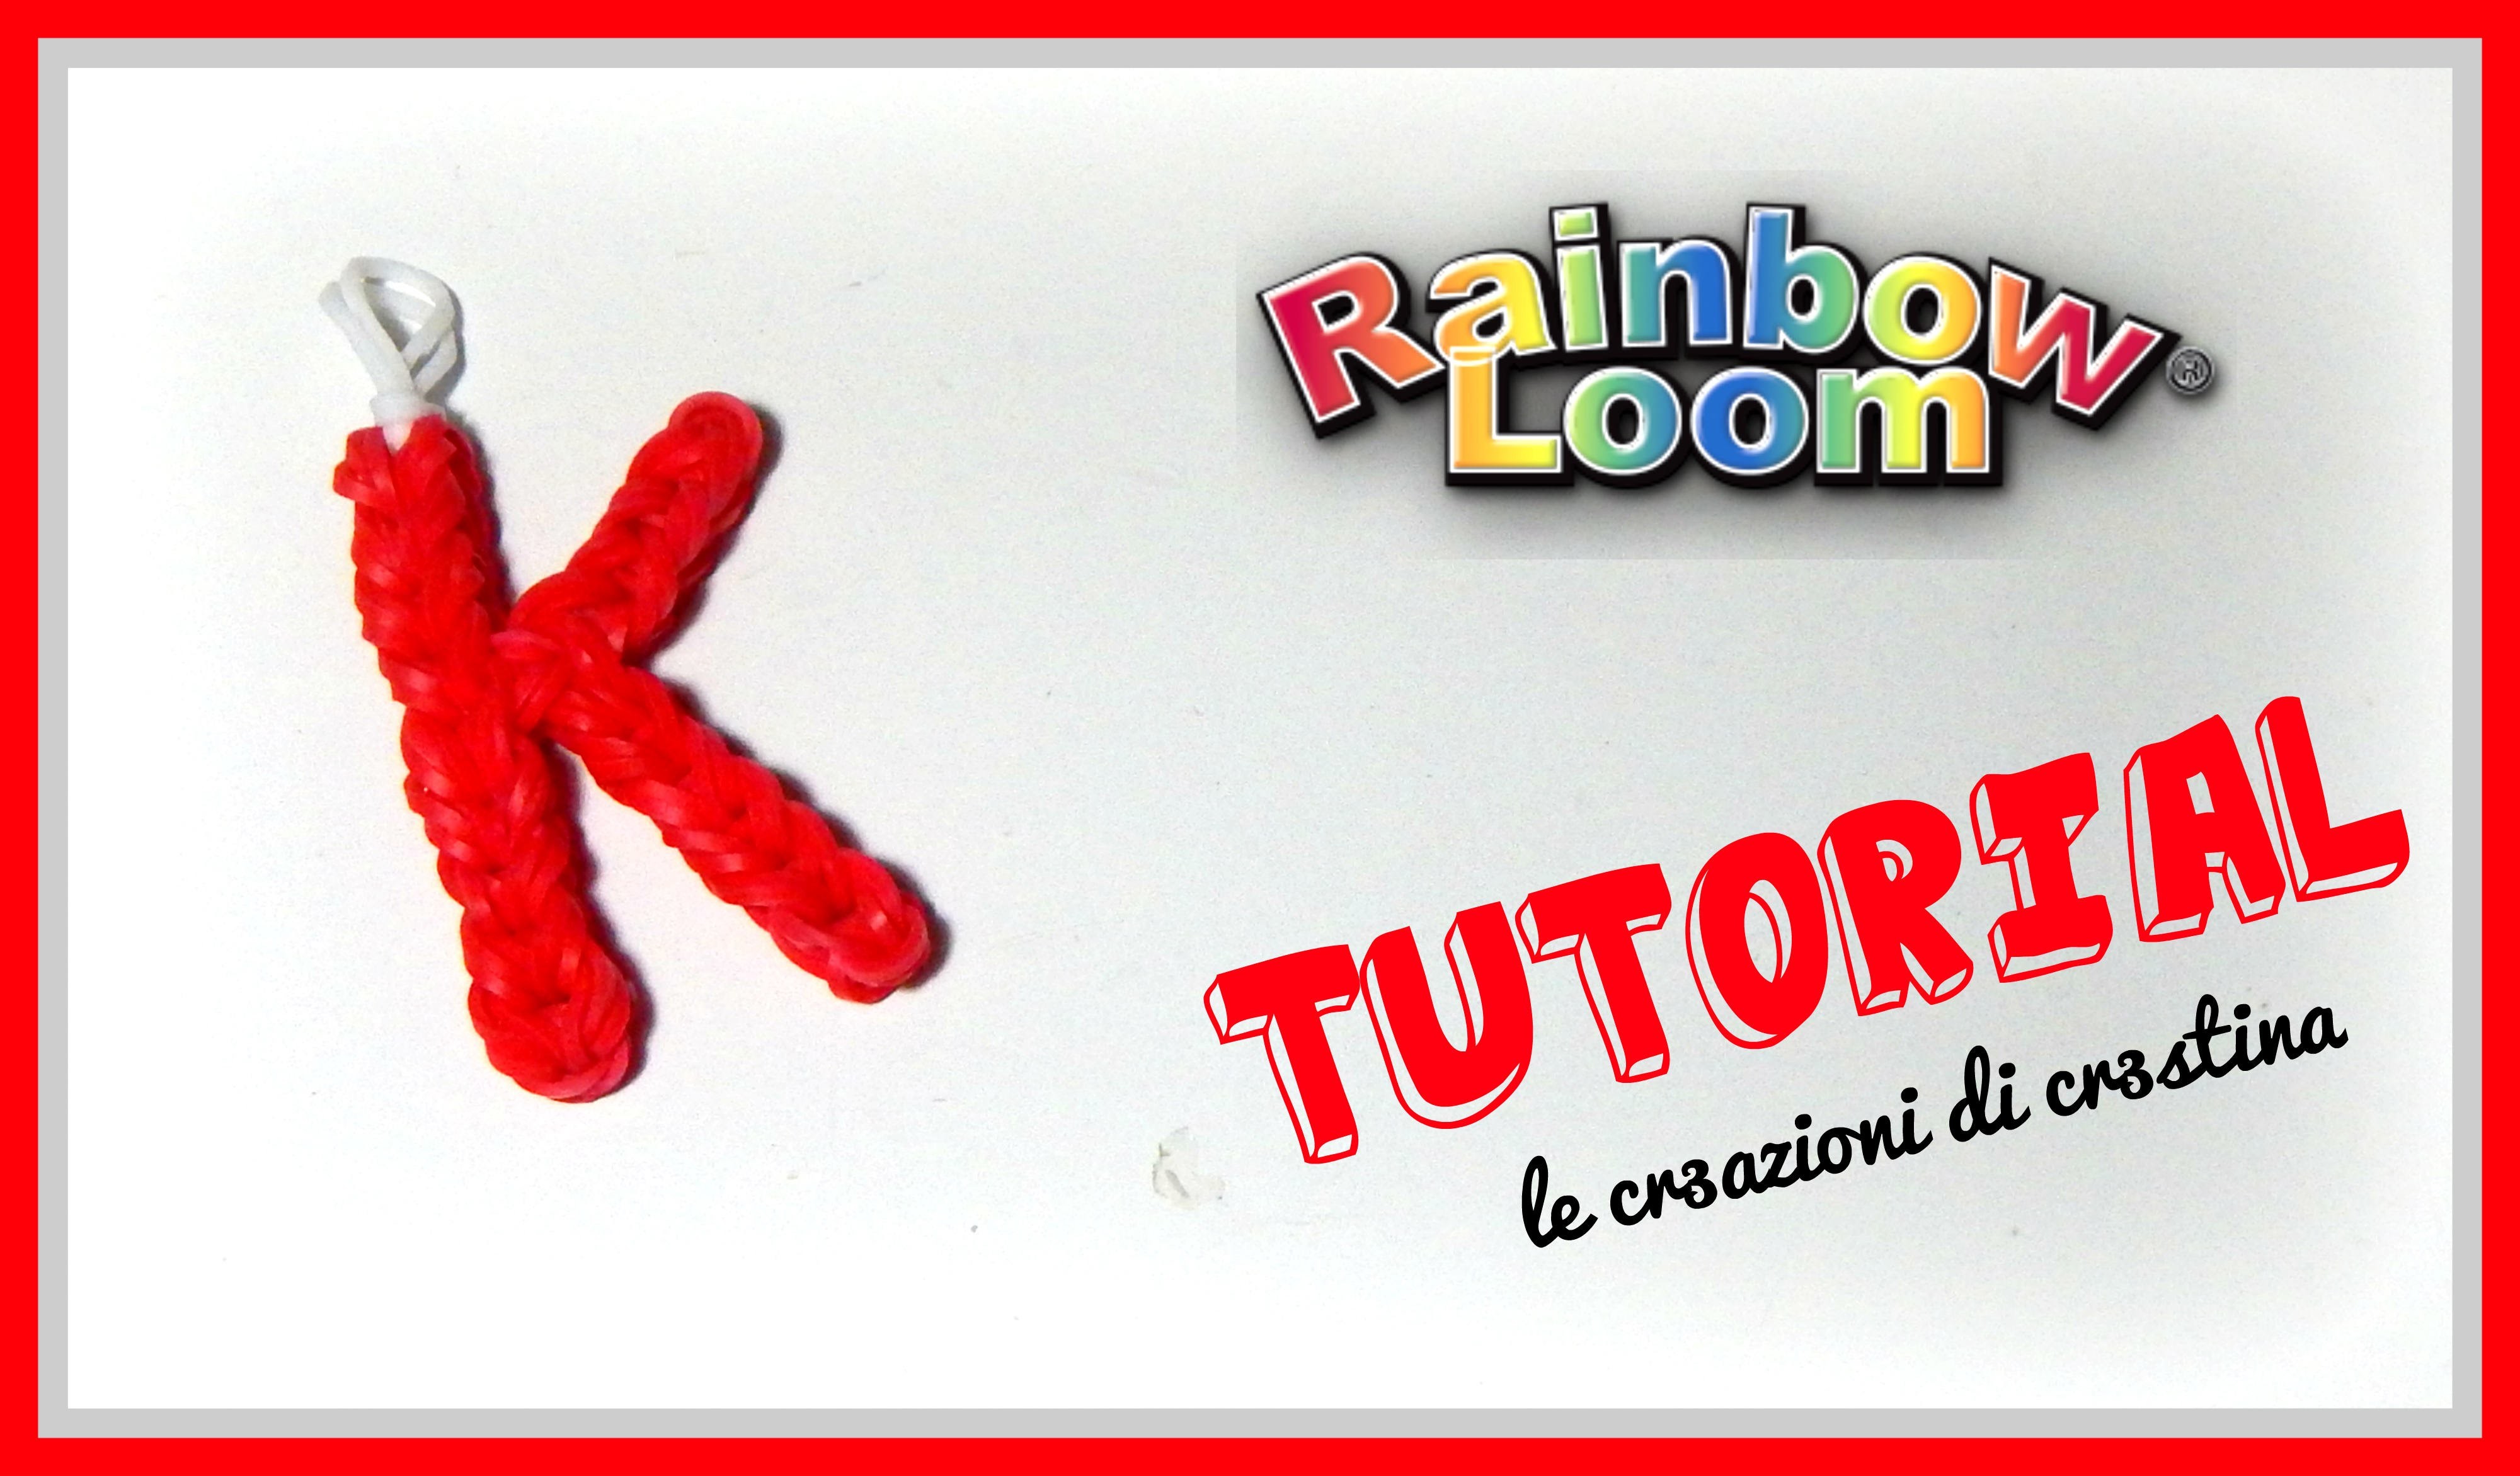 Tutorial Lettera K con Elastici RAINBOW LOOM - DIY Charm Lettere dell'Alfabeto